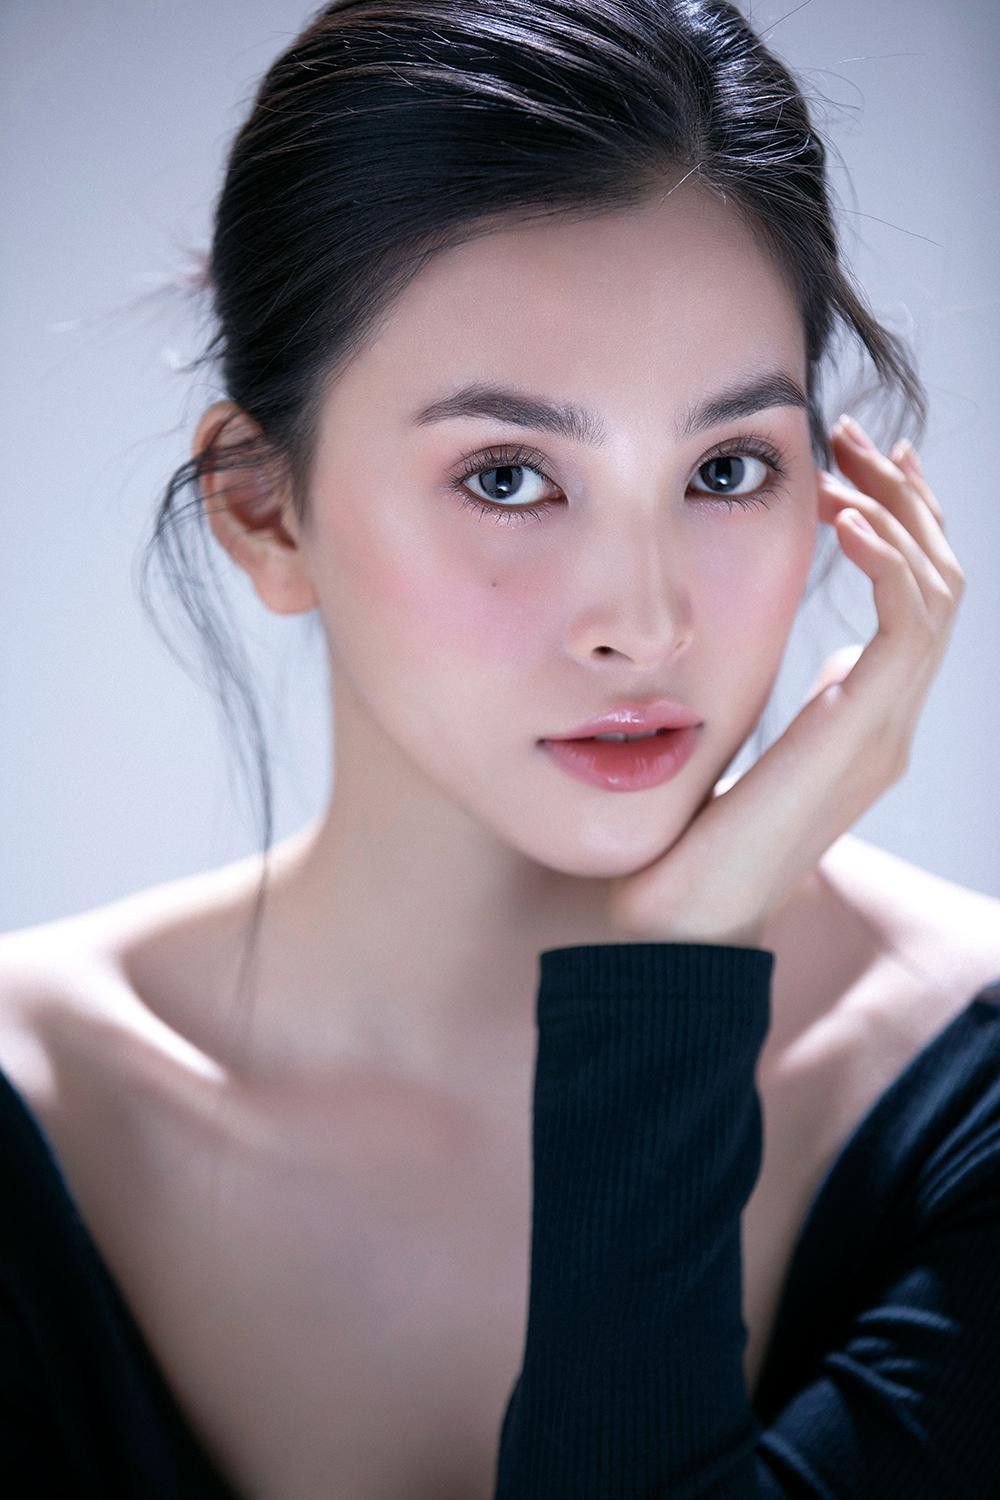 Trang điểm trong veo, Hoa hậu Tiểu Vy vẫn đẹp hút hồn với gương mặt đạt 'tỷ lệ vàng' - Ảnh 6.